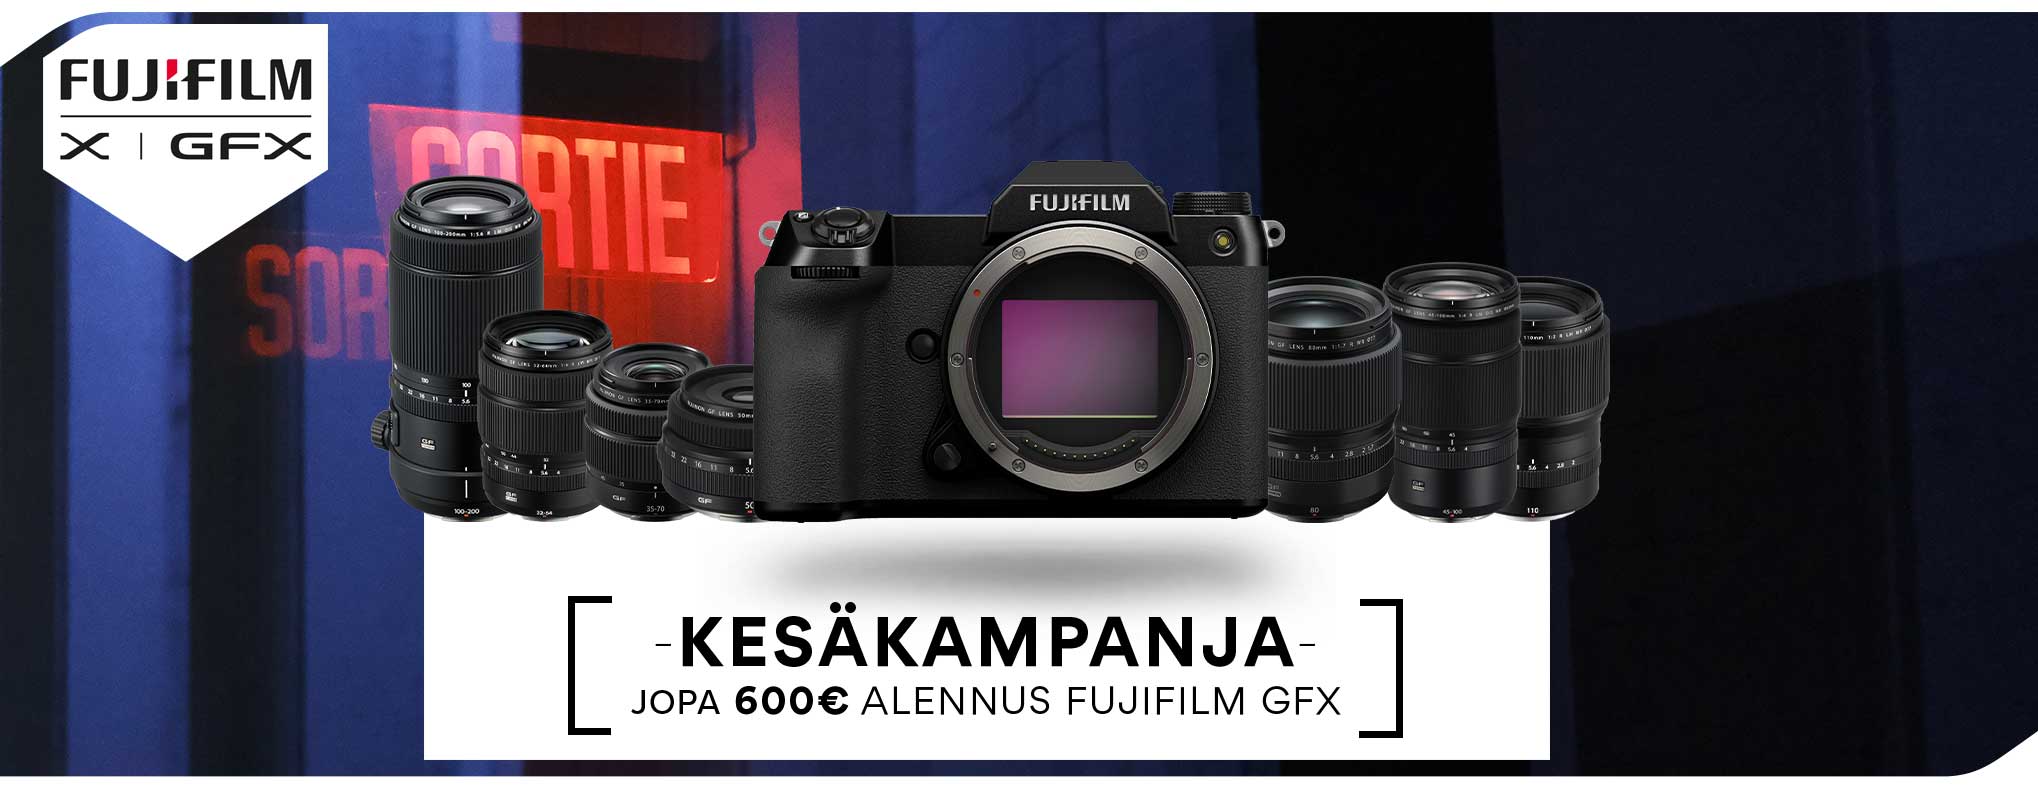 Fujifilm-GFX-GF-Campaign-FI